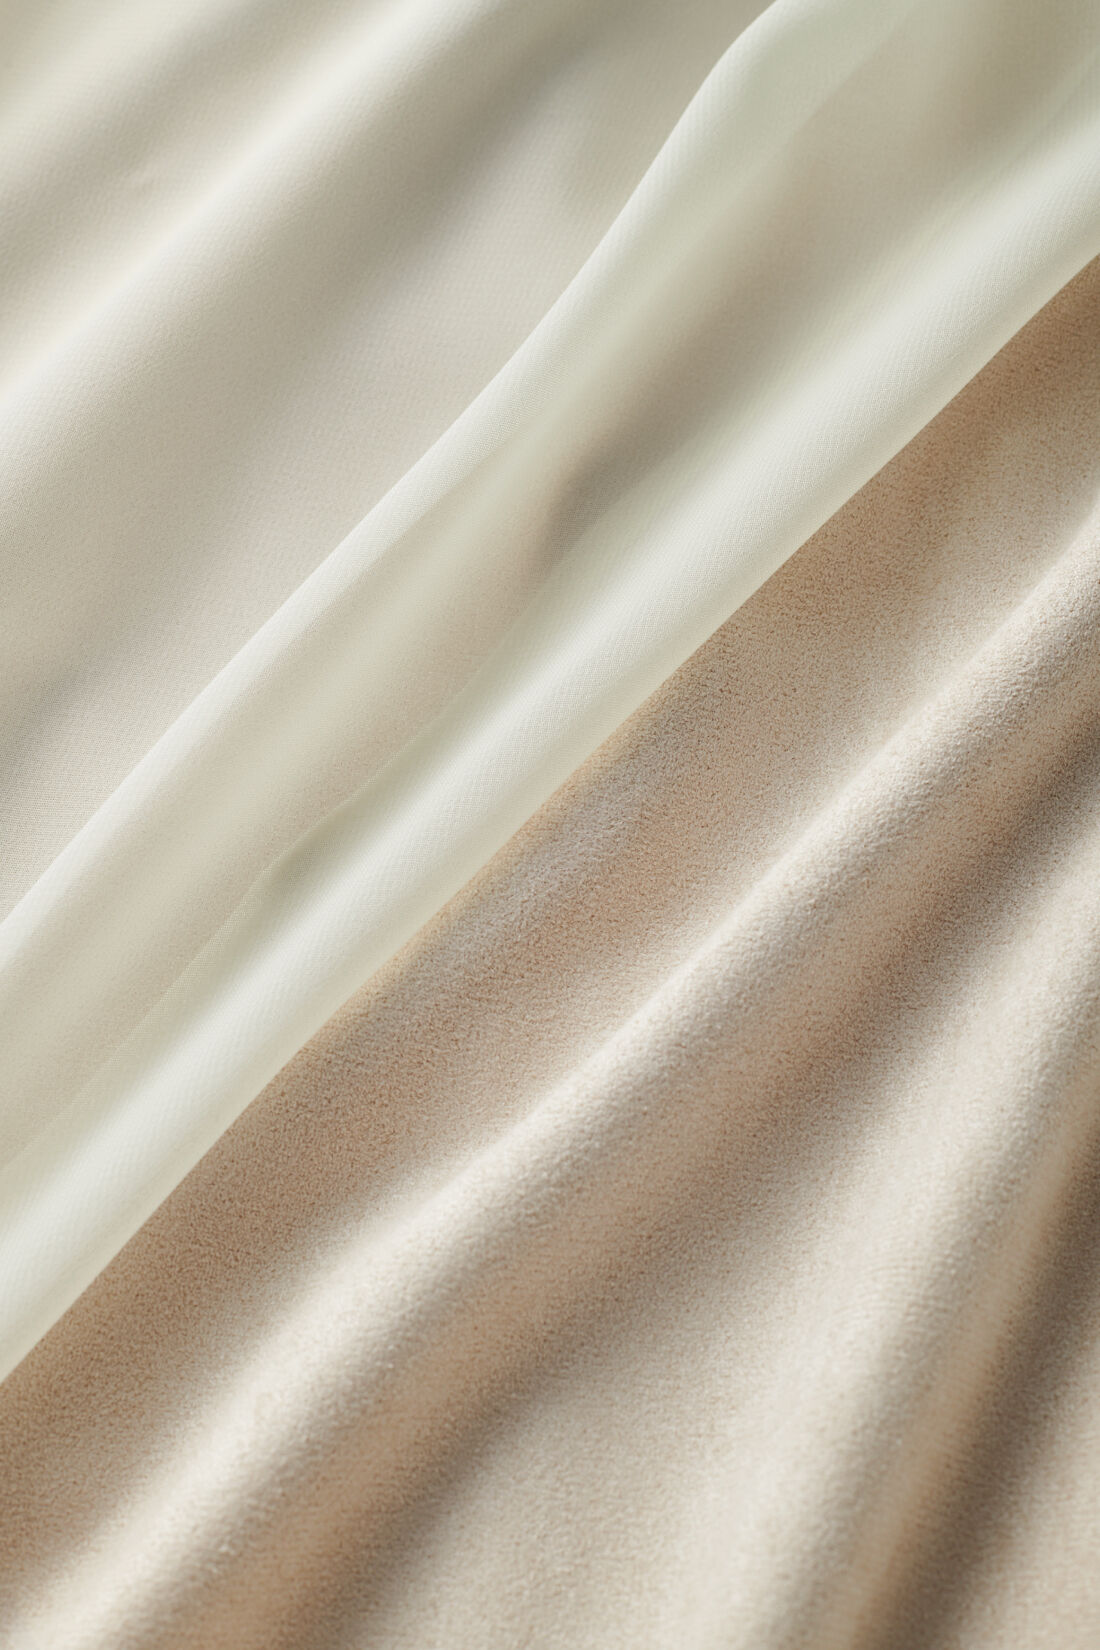 魔法部|魔法部×ミヤマアユミ　妖精のクチュール　シフォン揺らめくユリのスカート〈ホワイトベージュ〉|シフォン素材の中にはス エード調の生地。秋冬も 安心して着られます。